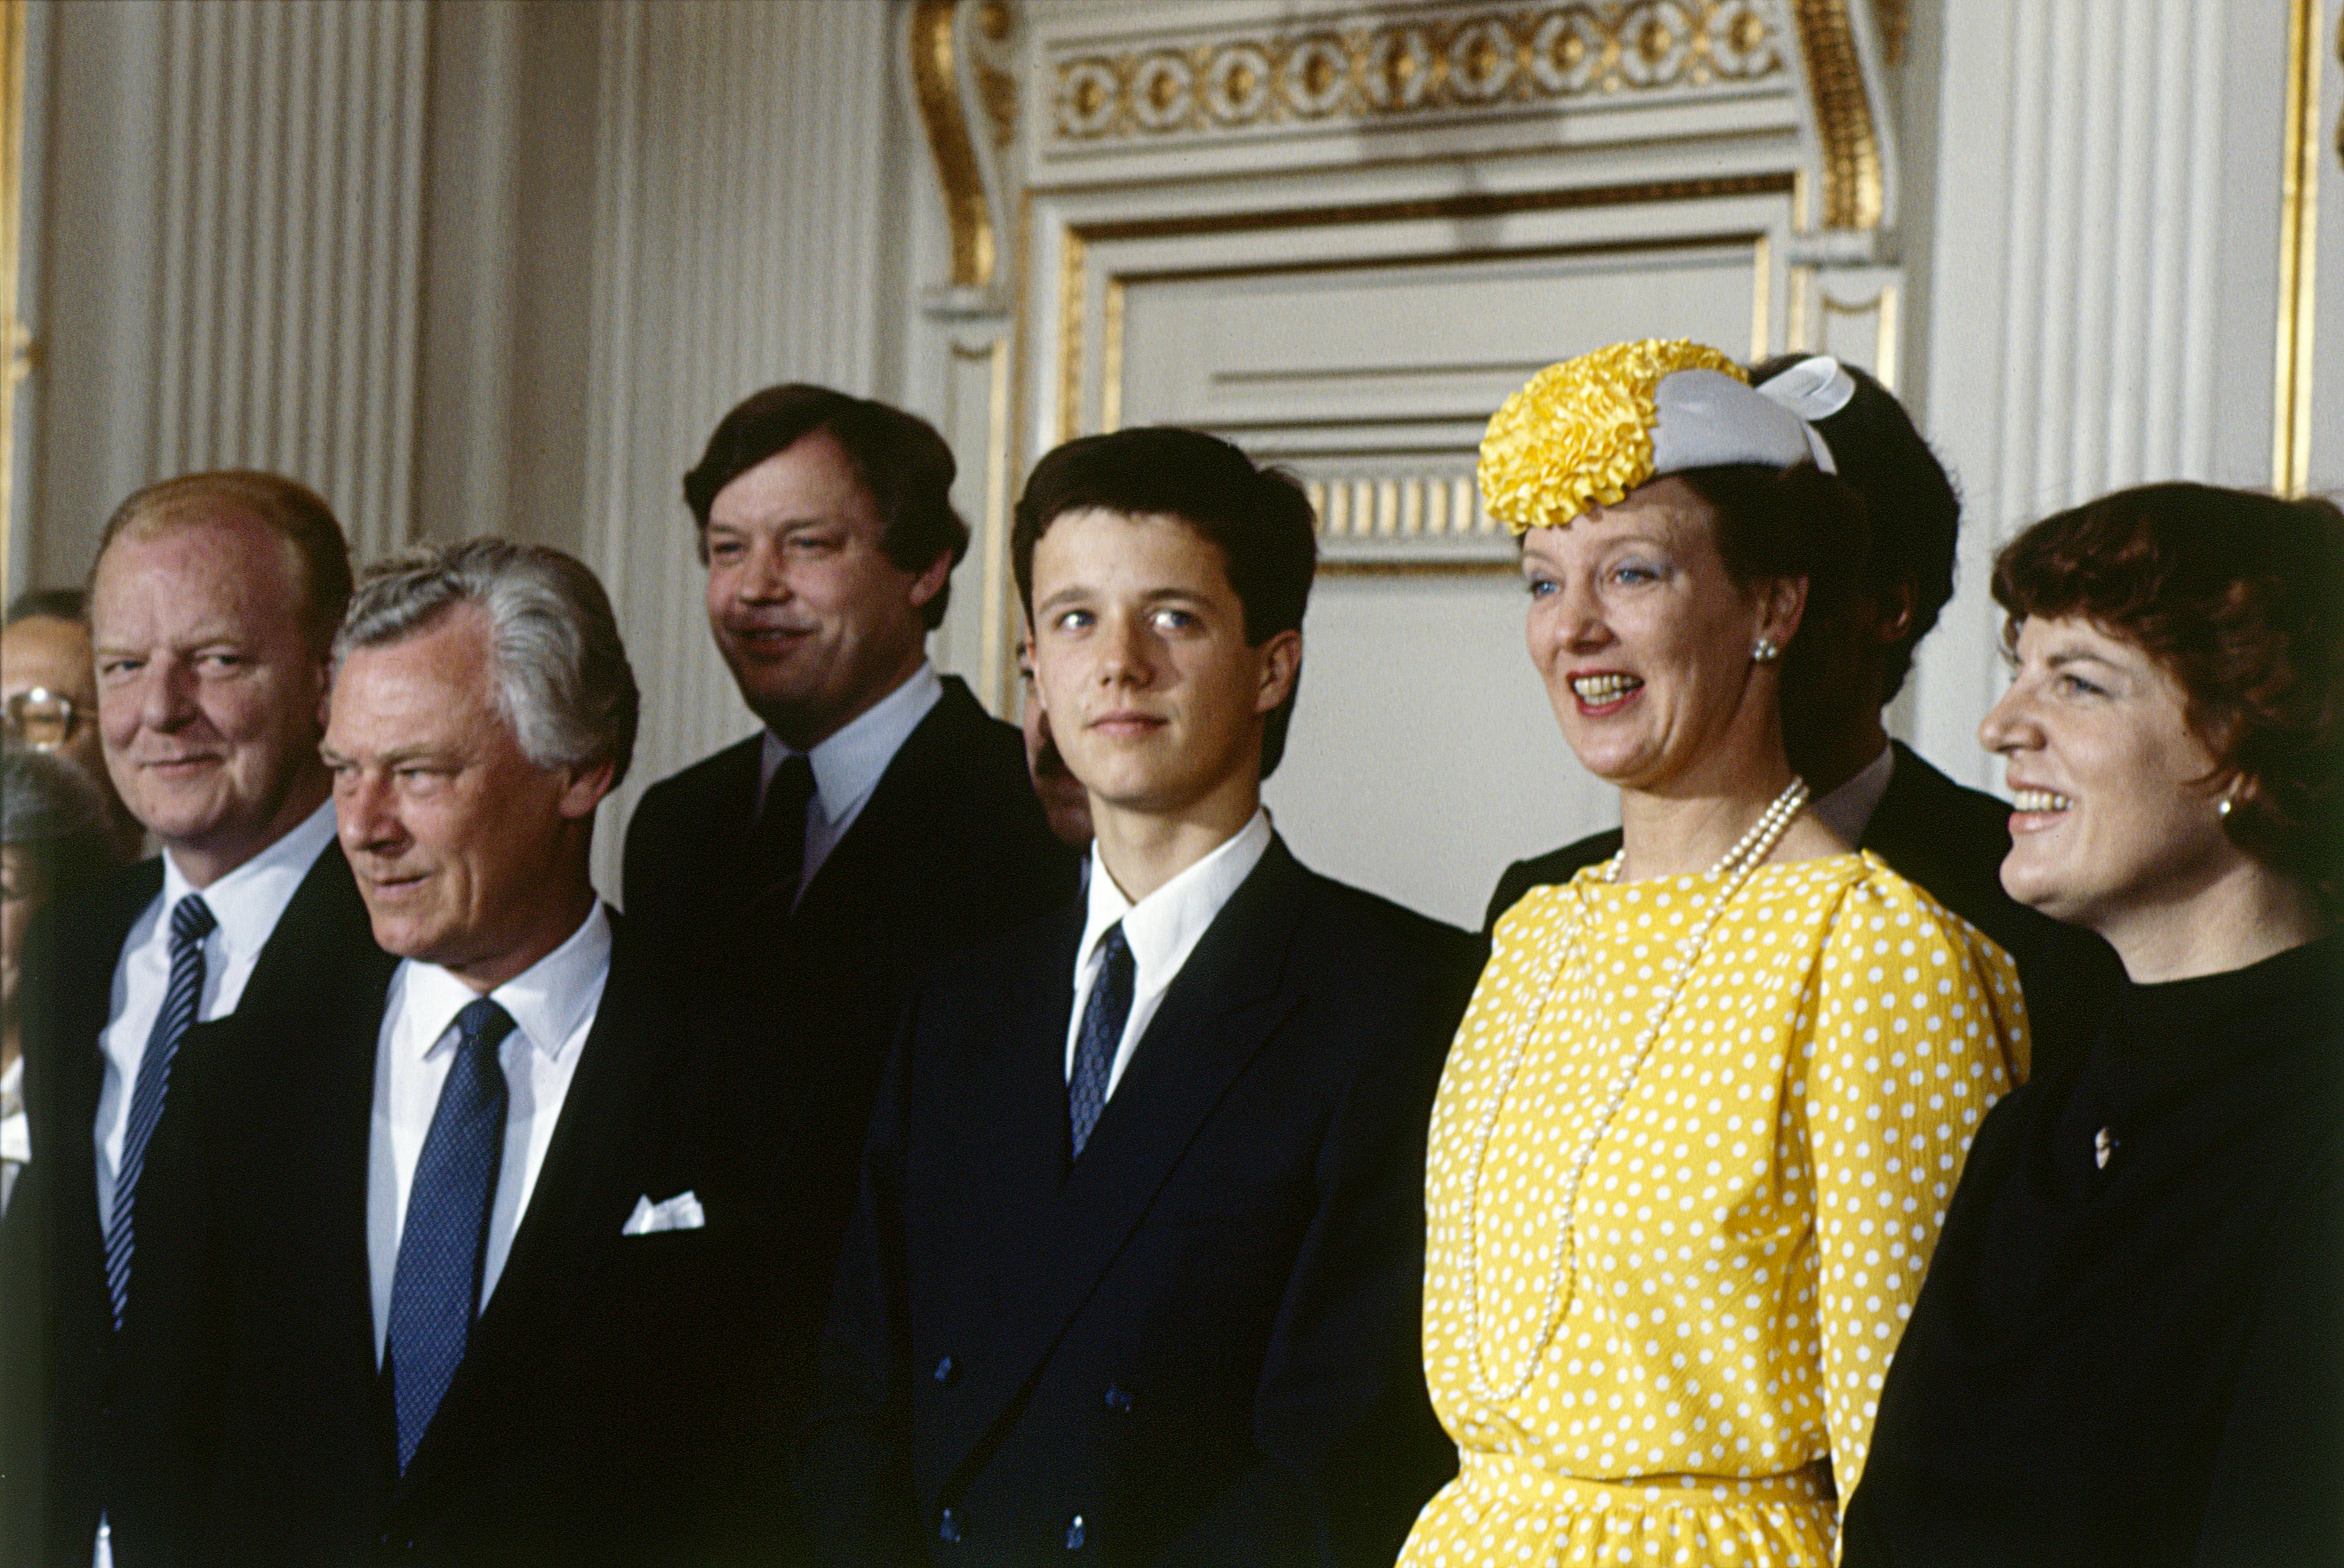 Da kronprins Frederik fyldte 18 år 26. maj 1986, deltog han for første gang i et statsråd sammen med sin mor, dronning Margrethe. Kronprinsen var en smule usikker og ikke helt tilfreds med sin fødselsdag. 